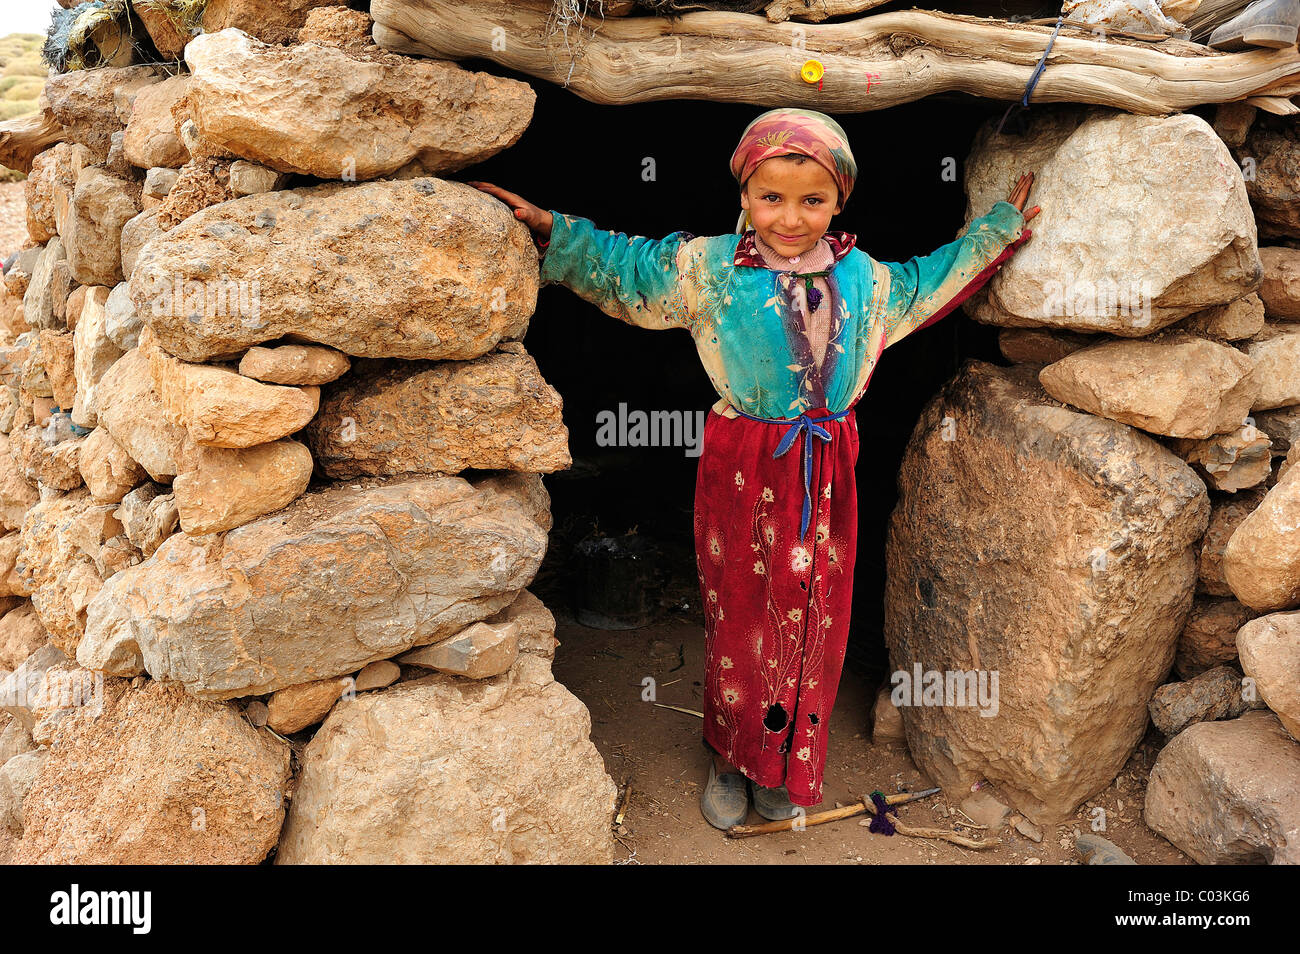 Petite fille berbère d'une famille de nomades à l'entrée d'une maison, Kelaa M'gouna, Haut Atlas, Maroc, Afrique Banque D'Images